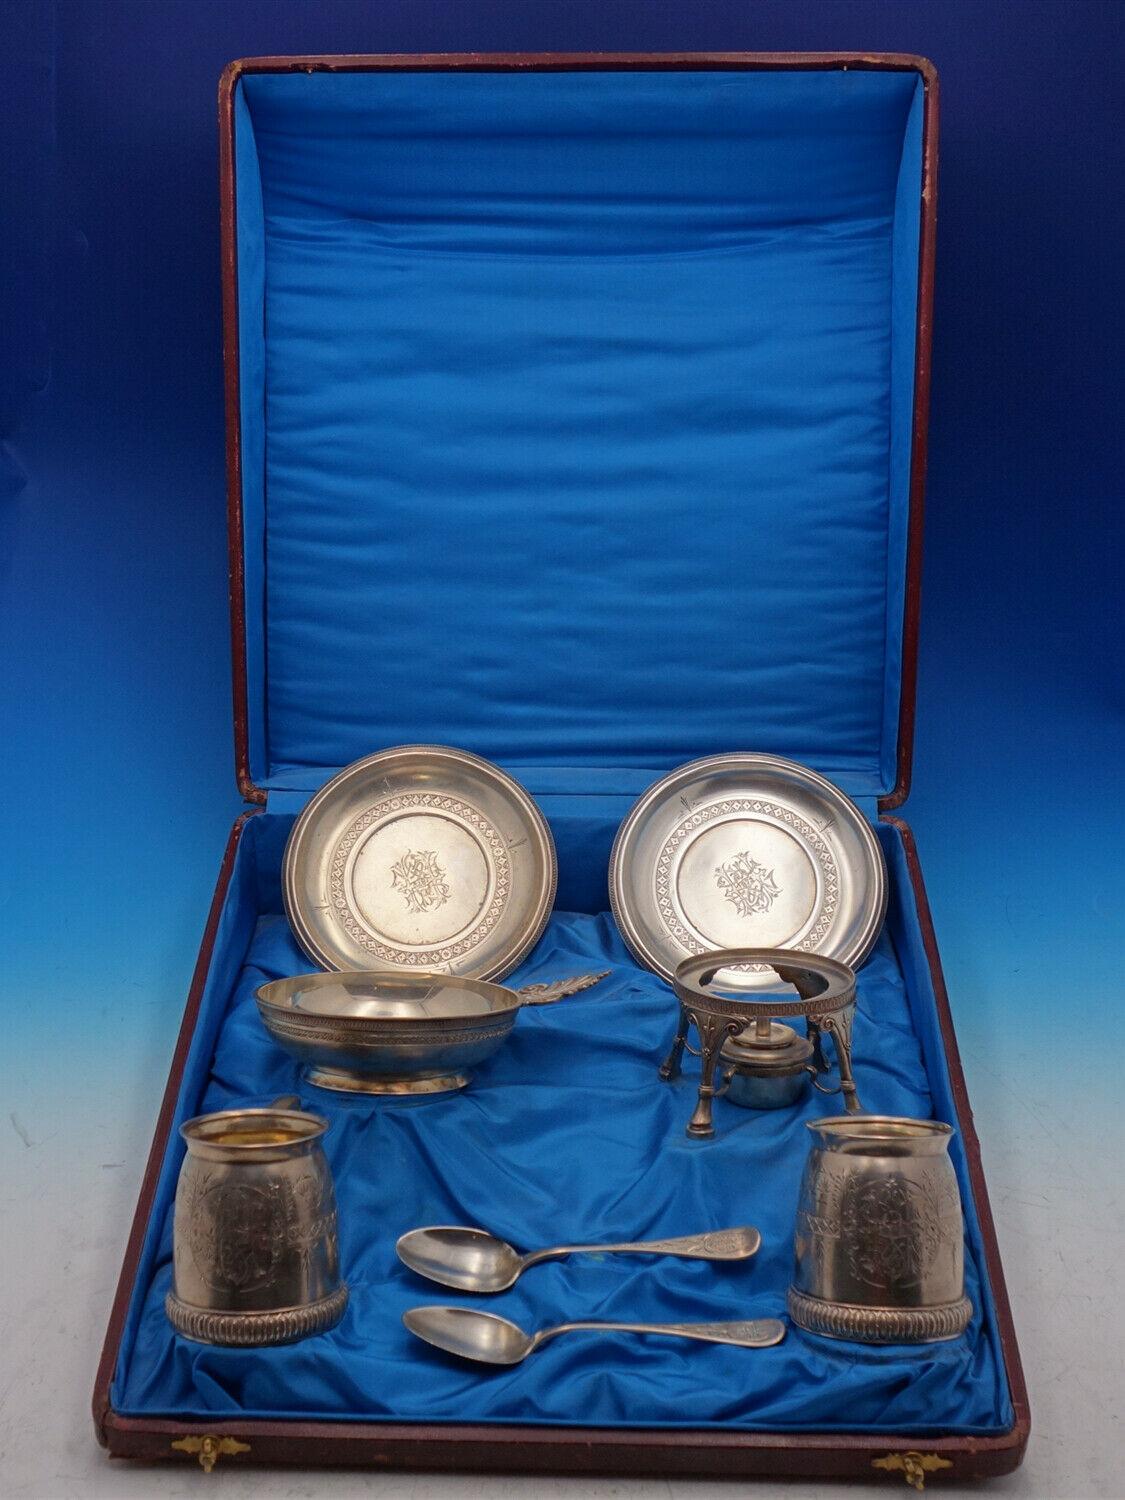 Tiffany and Co

Étonnant ensemble de 8 pièces pour enfant en argent sterling de Tiffany and Co daté de 1872 dans une boîte de présentation massive avec doublure en satin bleu (mesures 17 1/2